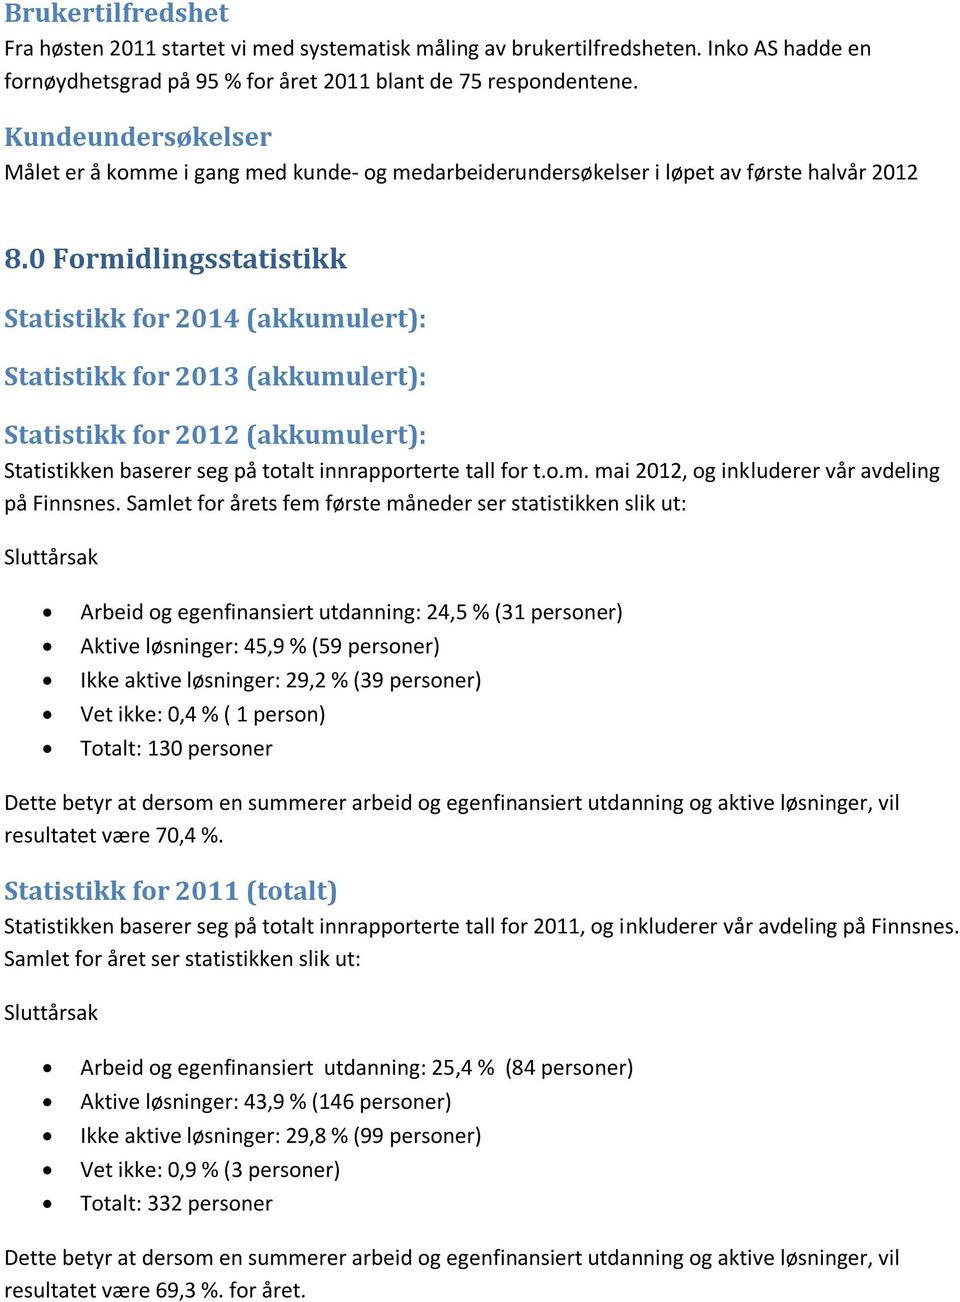 0 Formidlingsstatistikk Statistikk for 2014 (akkumulert): Statistikk for 2013 (akkumulert): Statistikk for 2012 (akkumulert): Statistikken baserer seg på totalt innrapporterte tall for t.o.m. mai 2012, og inkluderer vår avdeling på Finnsnes.